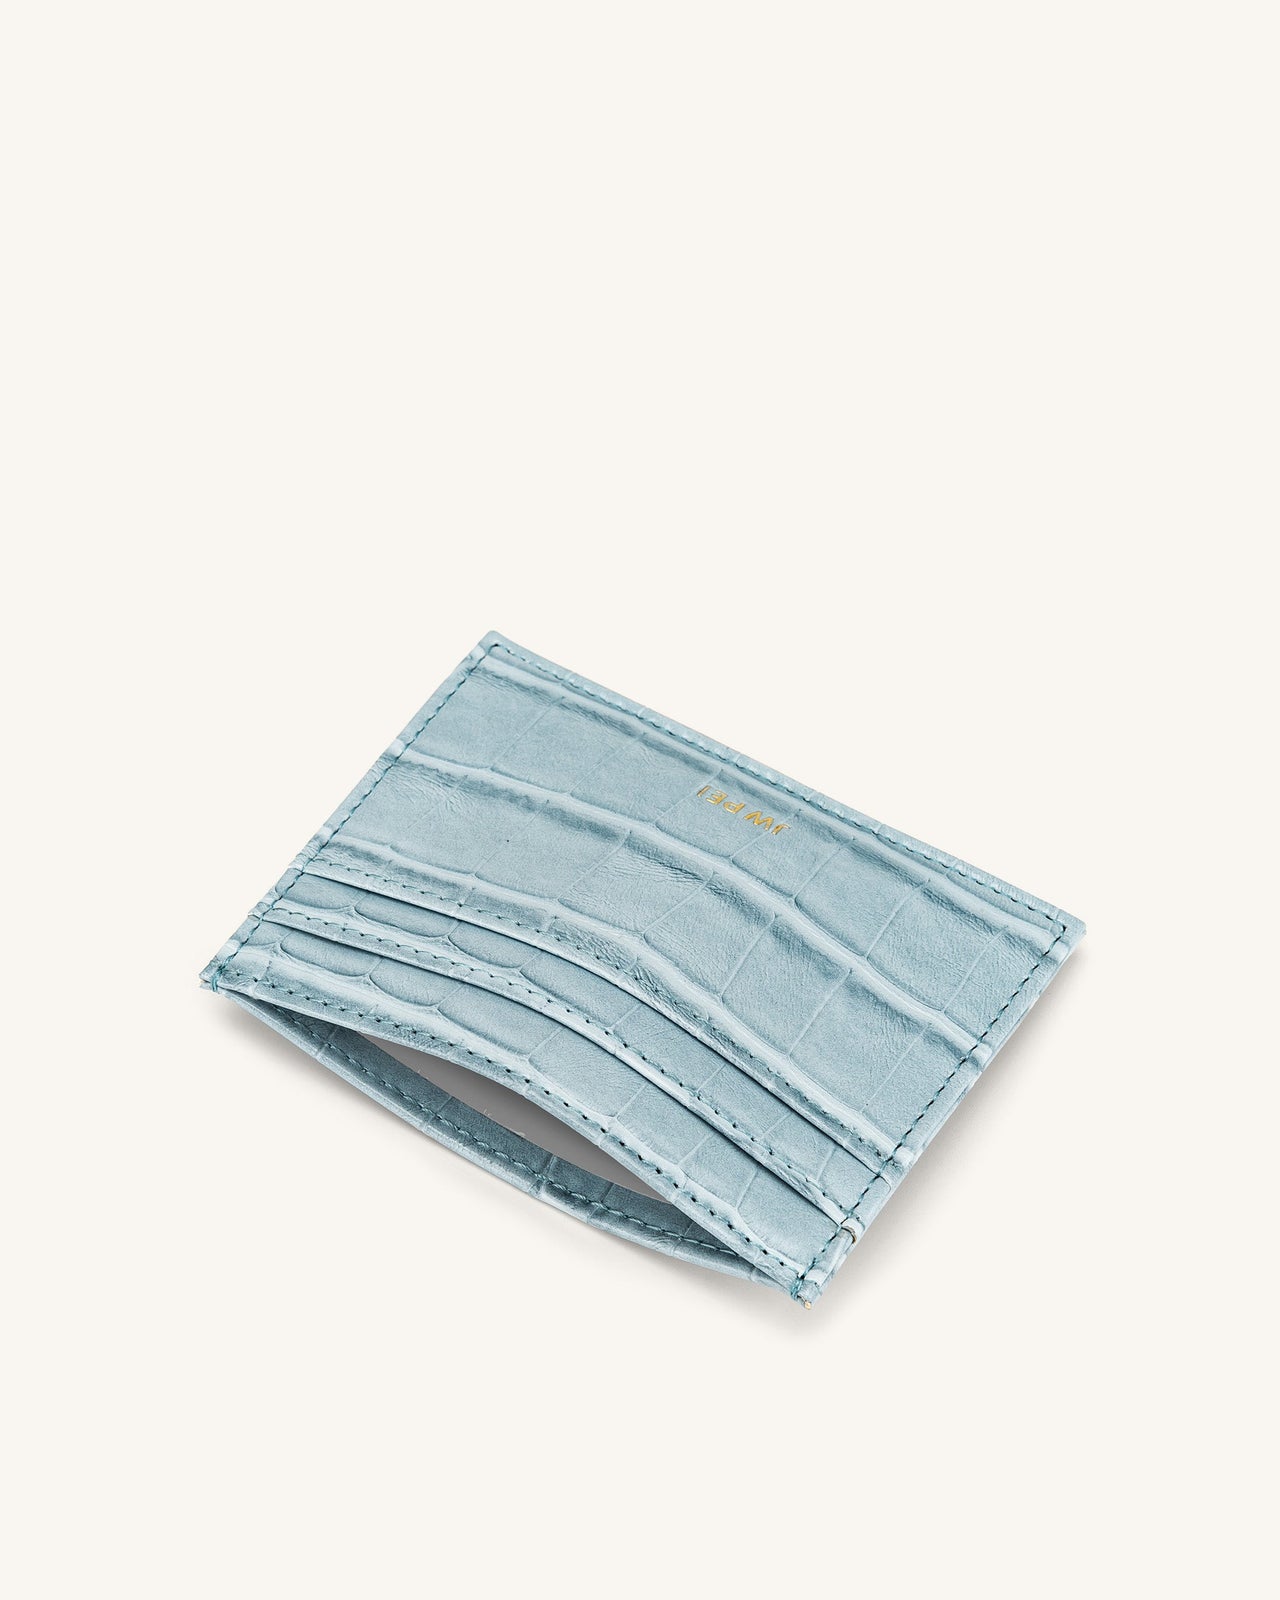 카드 지갑 - 아이스 블루 악어 무늬